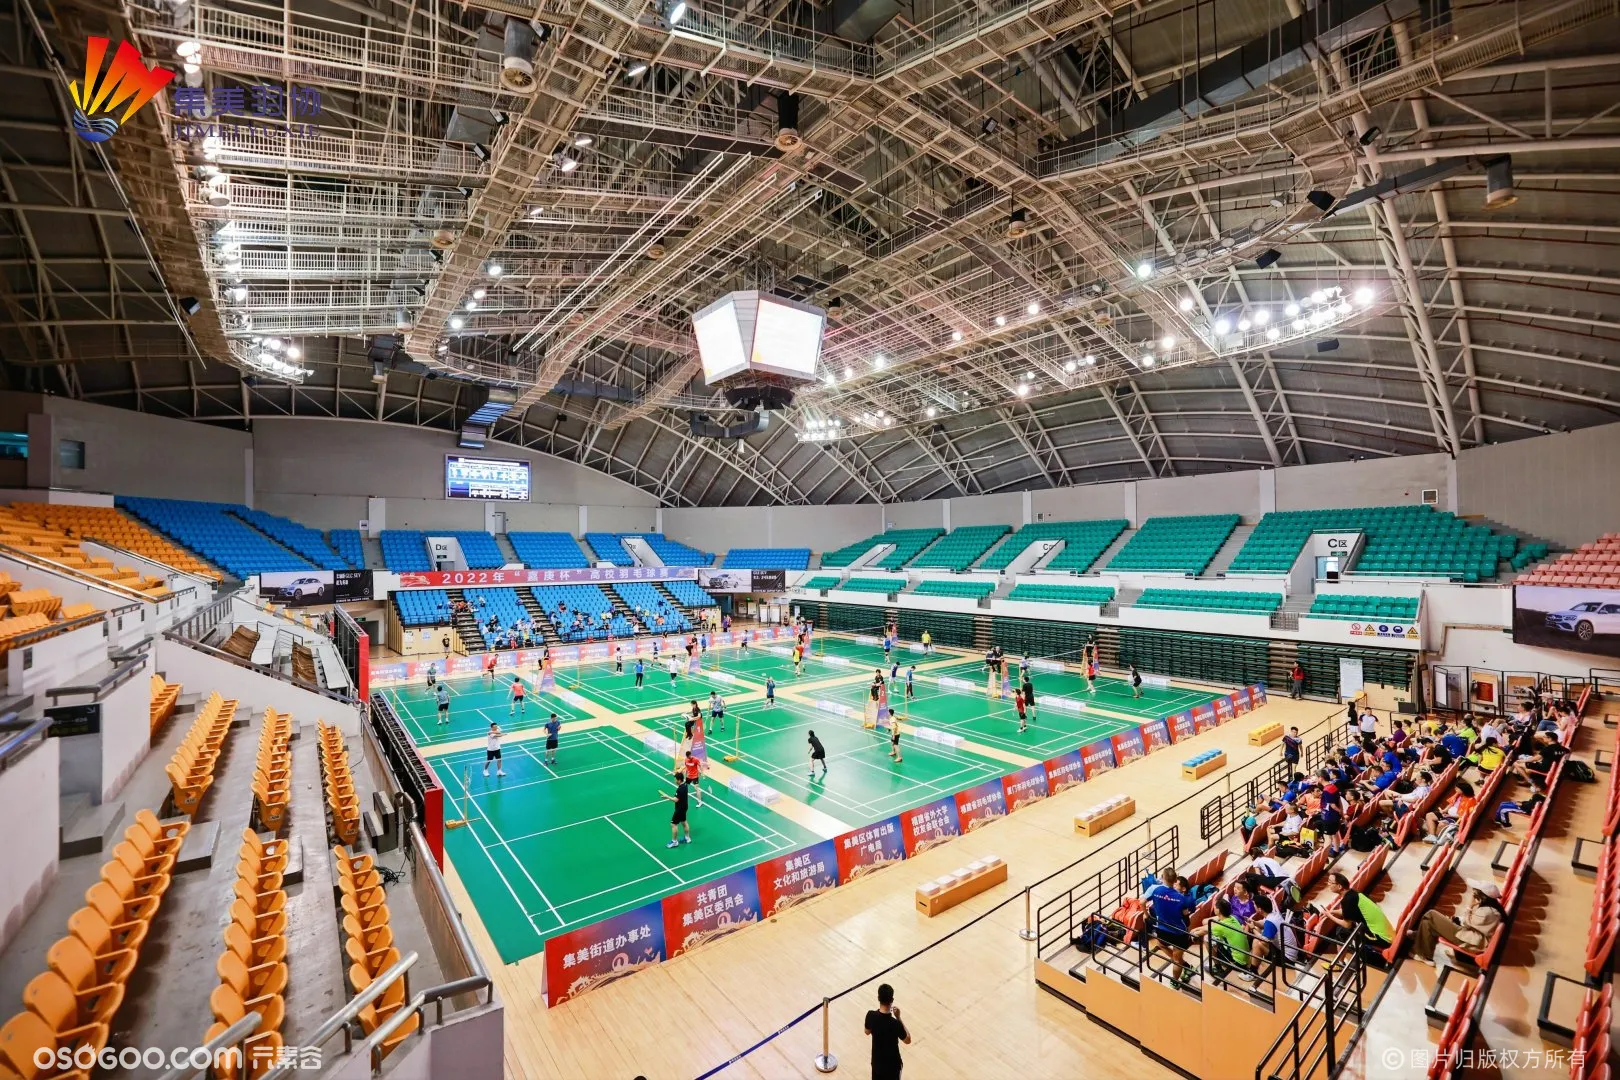 2022年第五届“嘉庚杯”羽毛球团体邀请赛